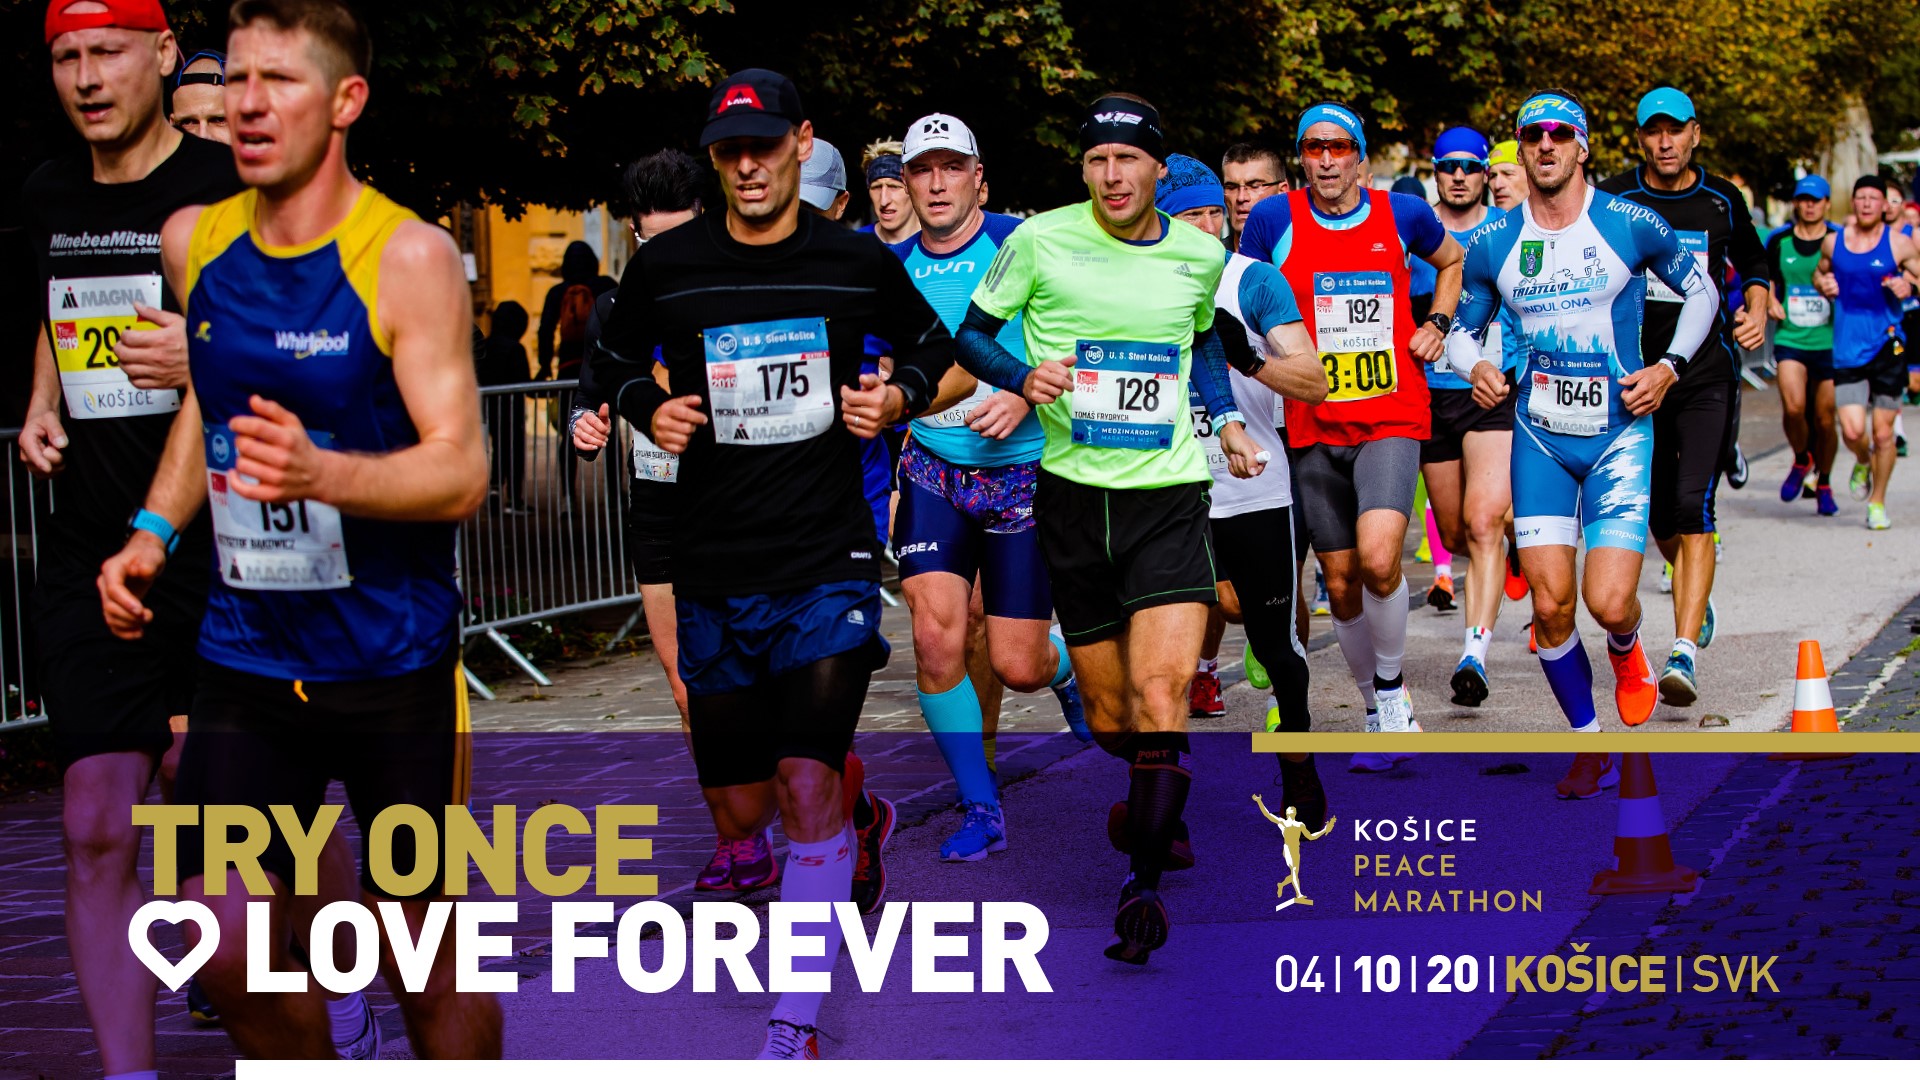 Medzinárodný maratón mieru / Košice Peace Marathon 2020